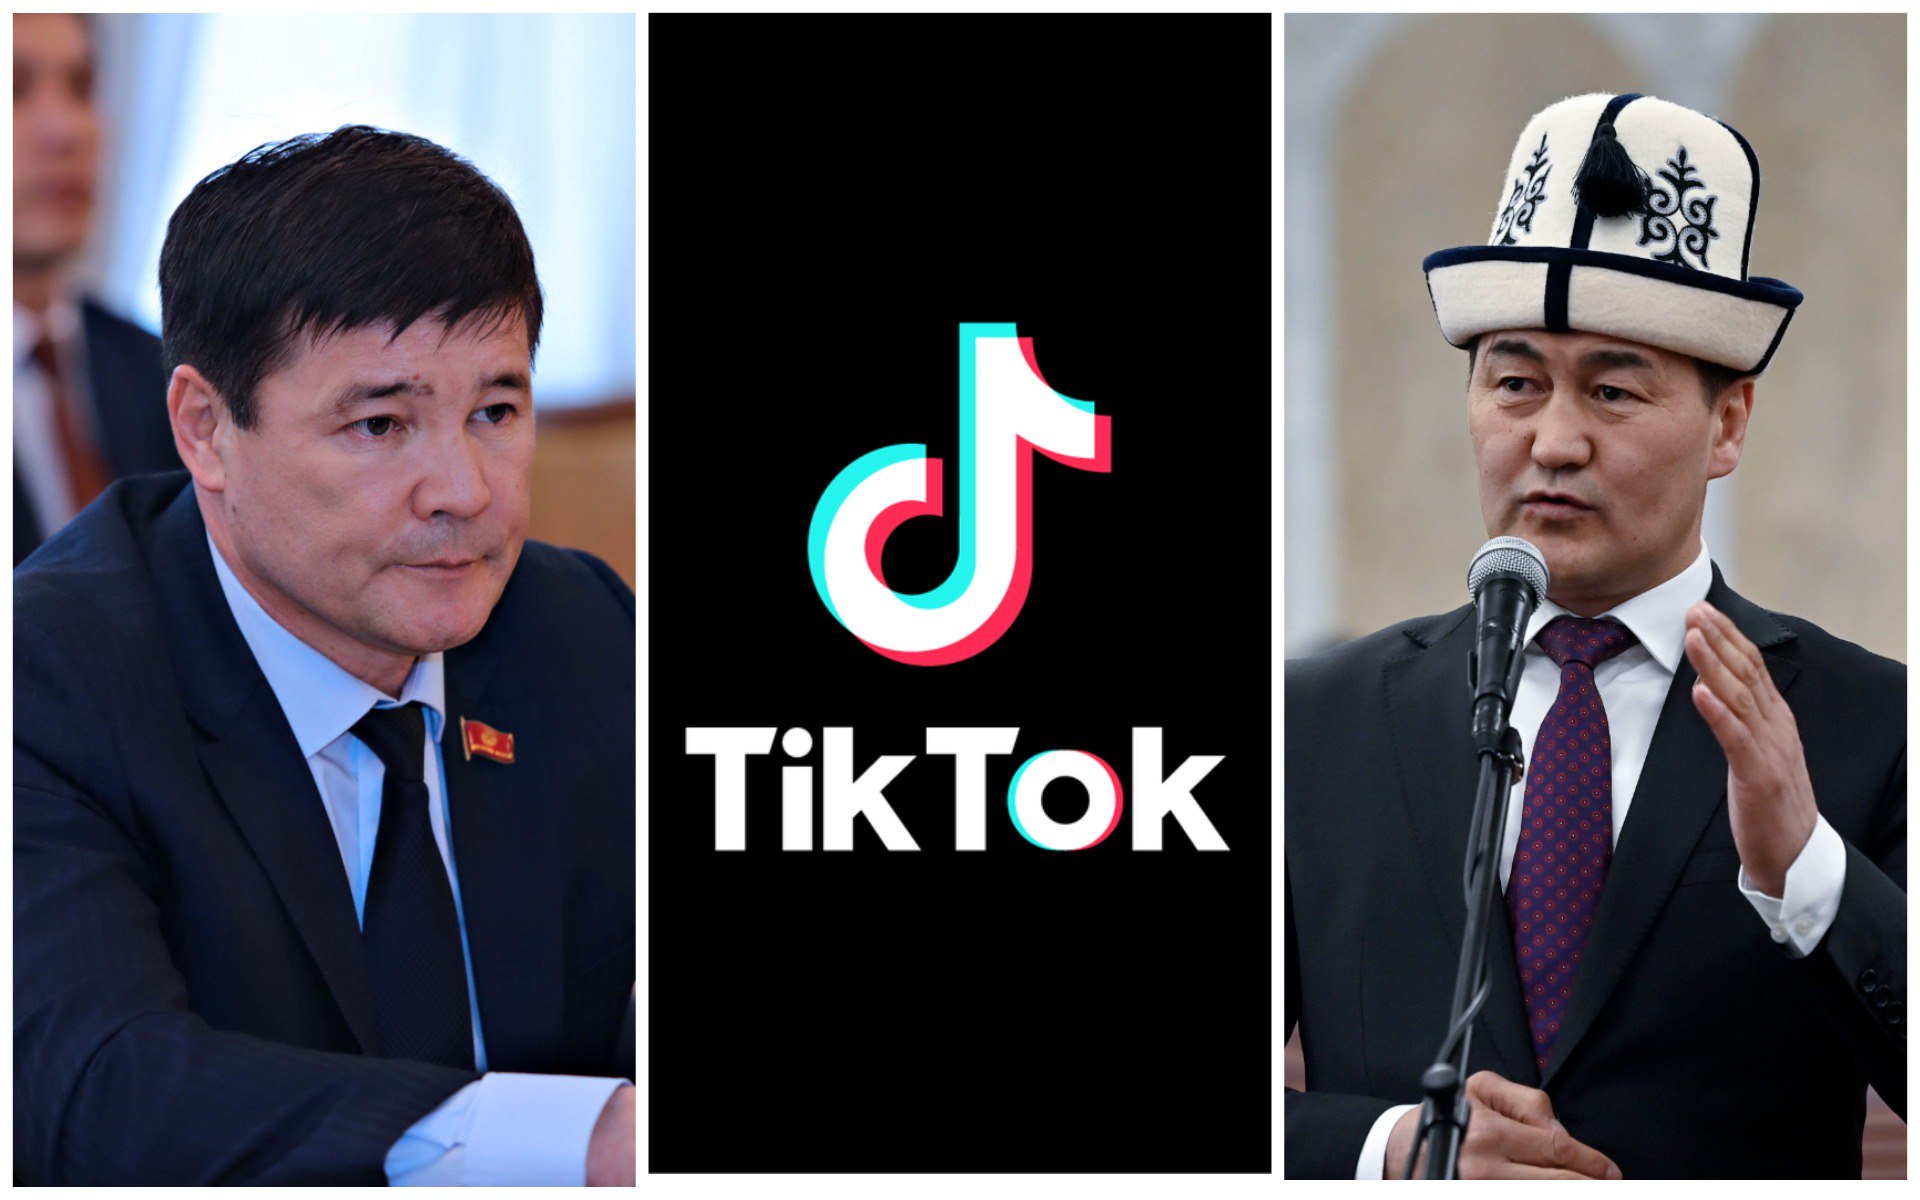 Инициатива дня: В парламенте предложили «взять под контроль» работу TikTok из-за того, что он «плохо» влияет на молодежь